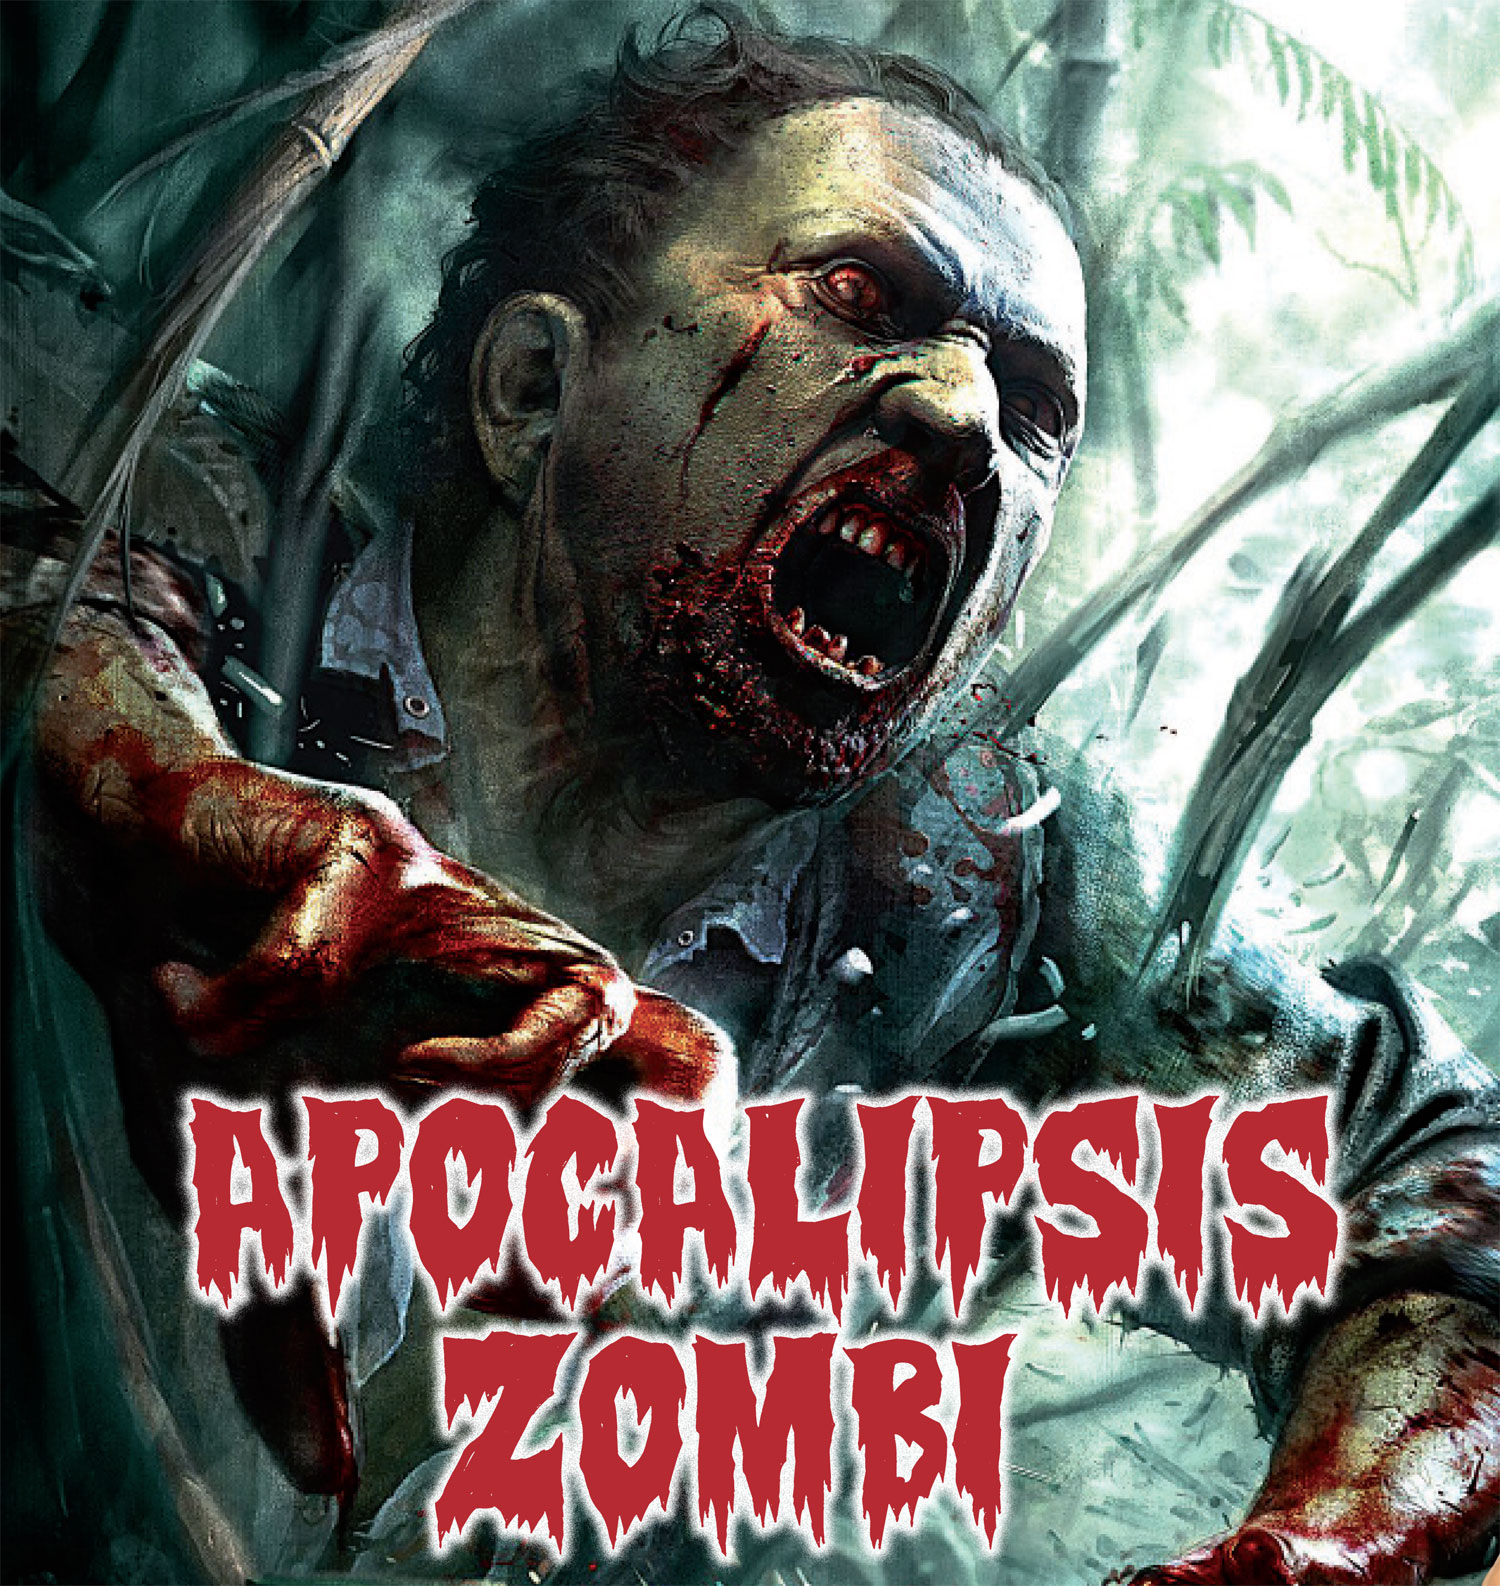 Juegos de zombis en PS3 - HobbyConsolas Juegos